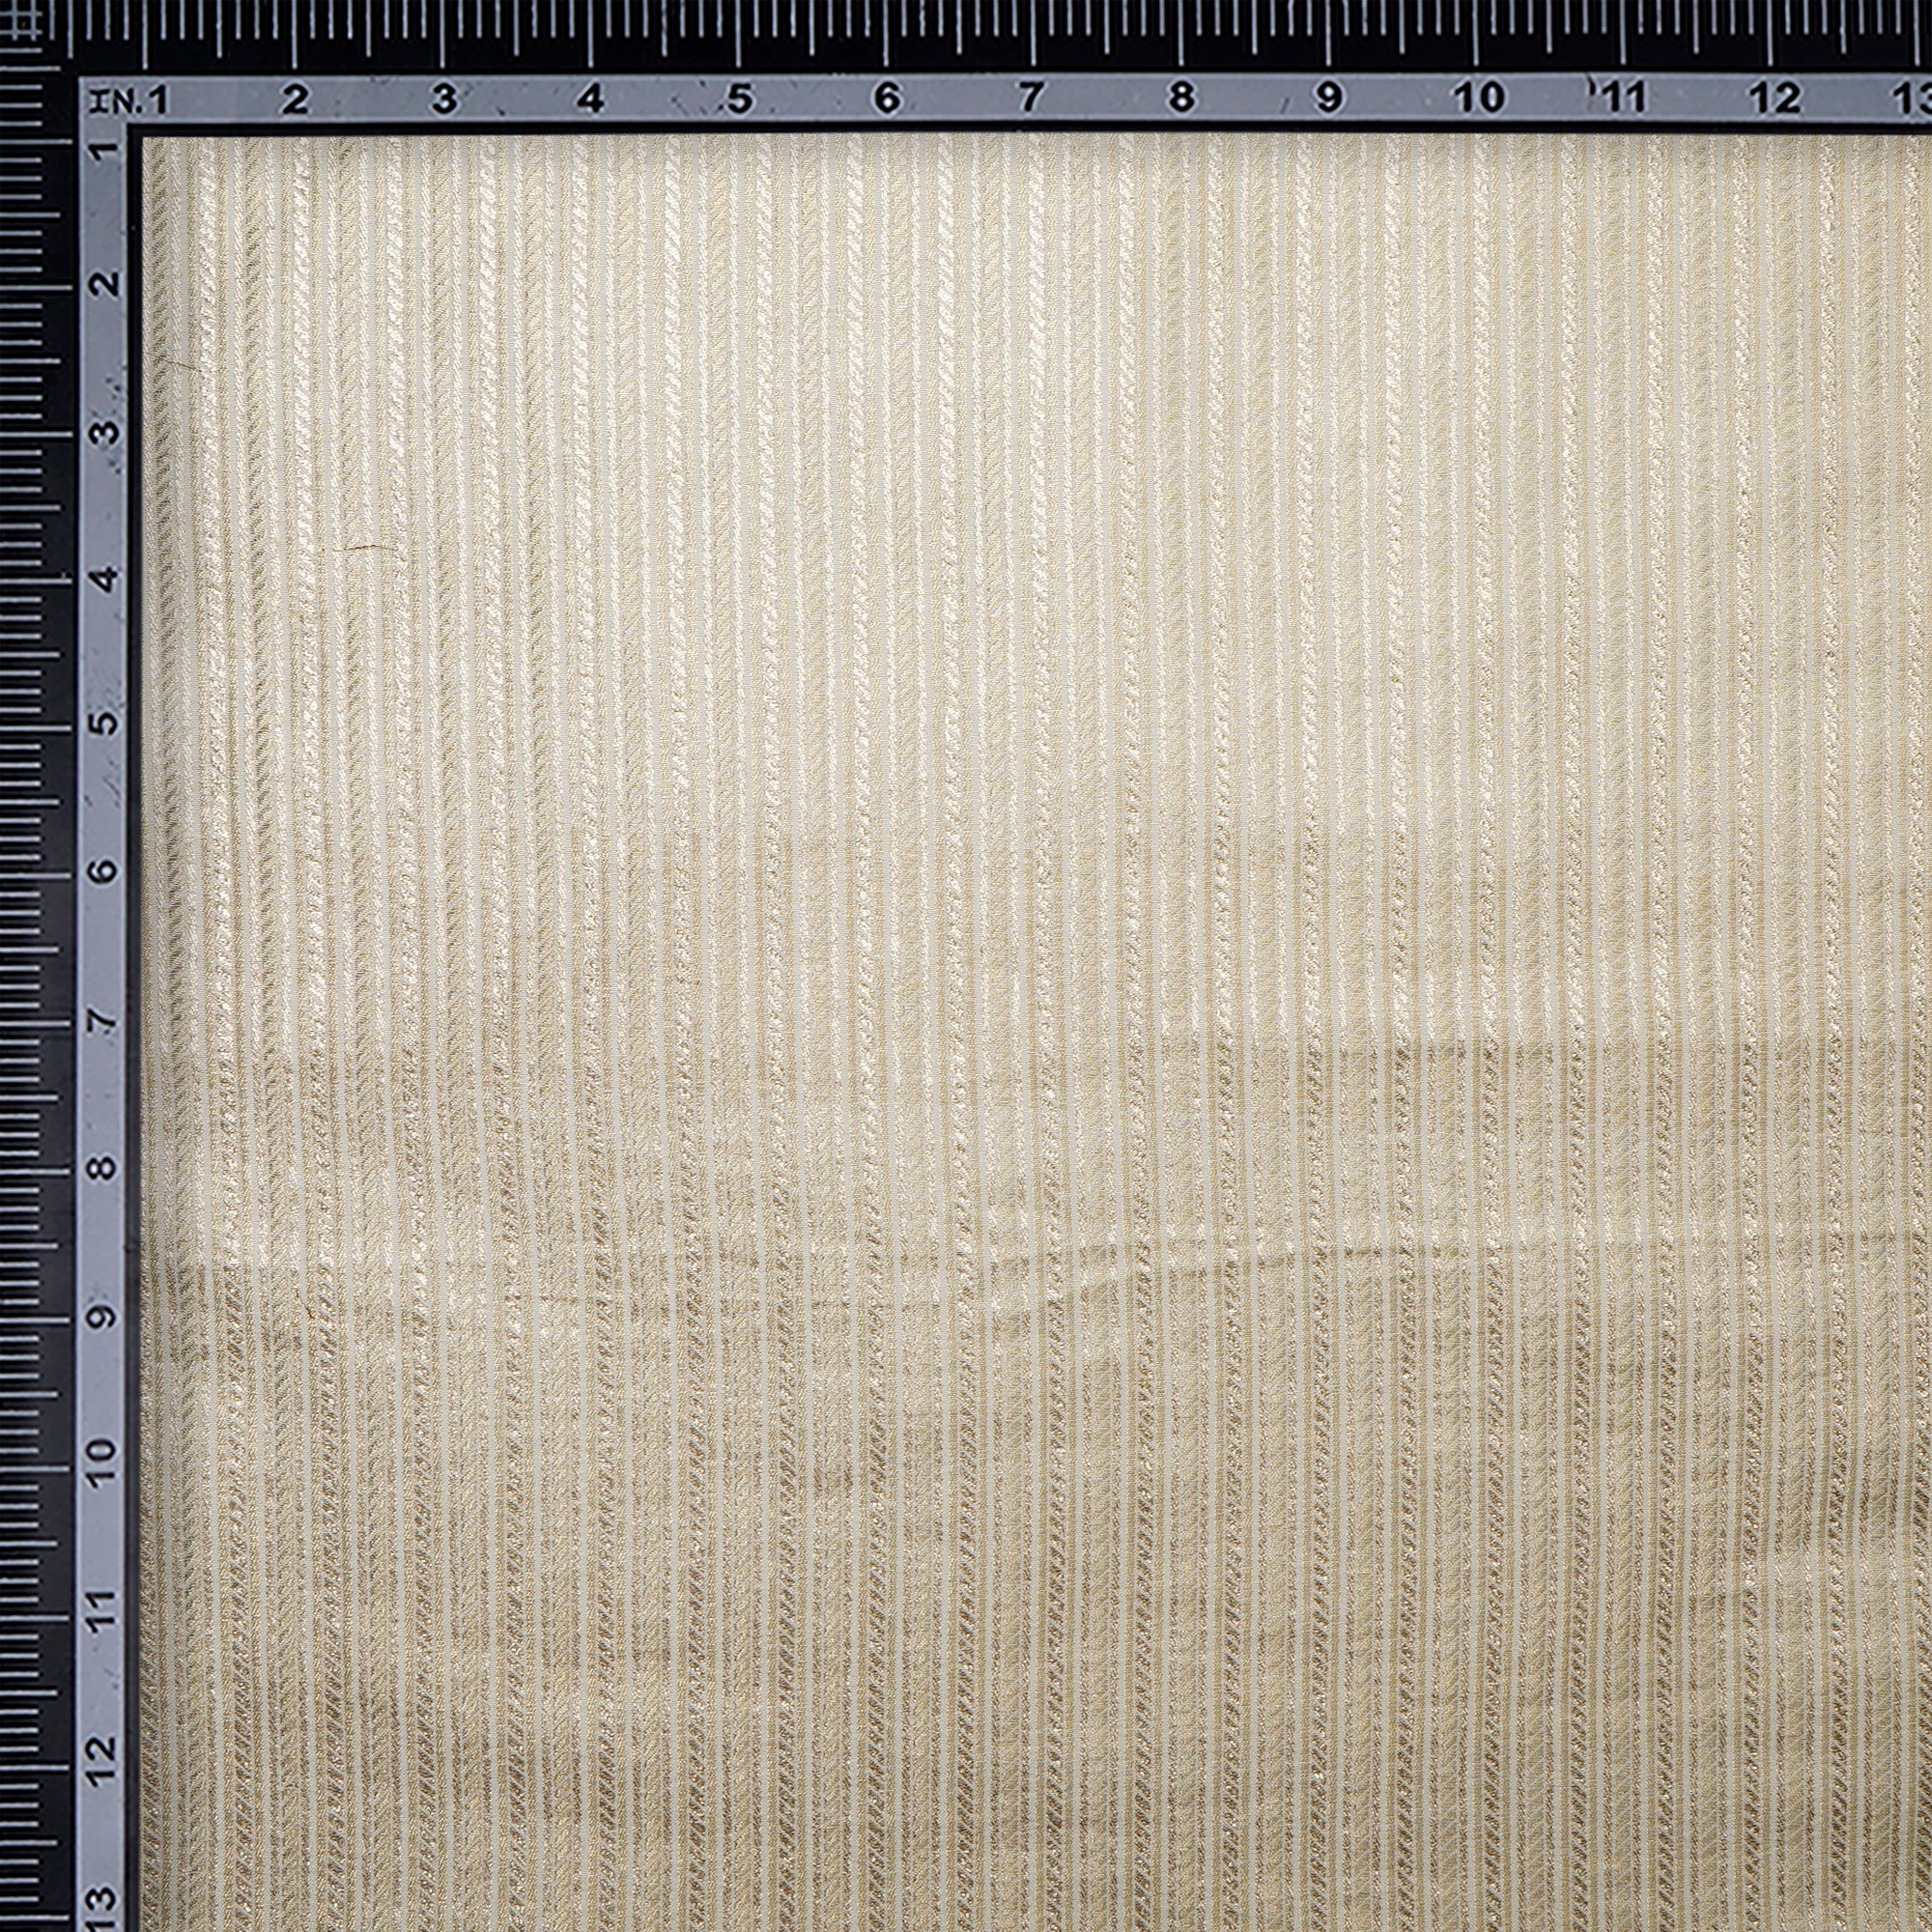 Off White-Gold Stripe Pattern Blended Banarasi Brocade Fabric